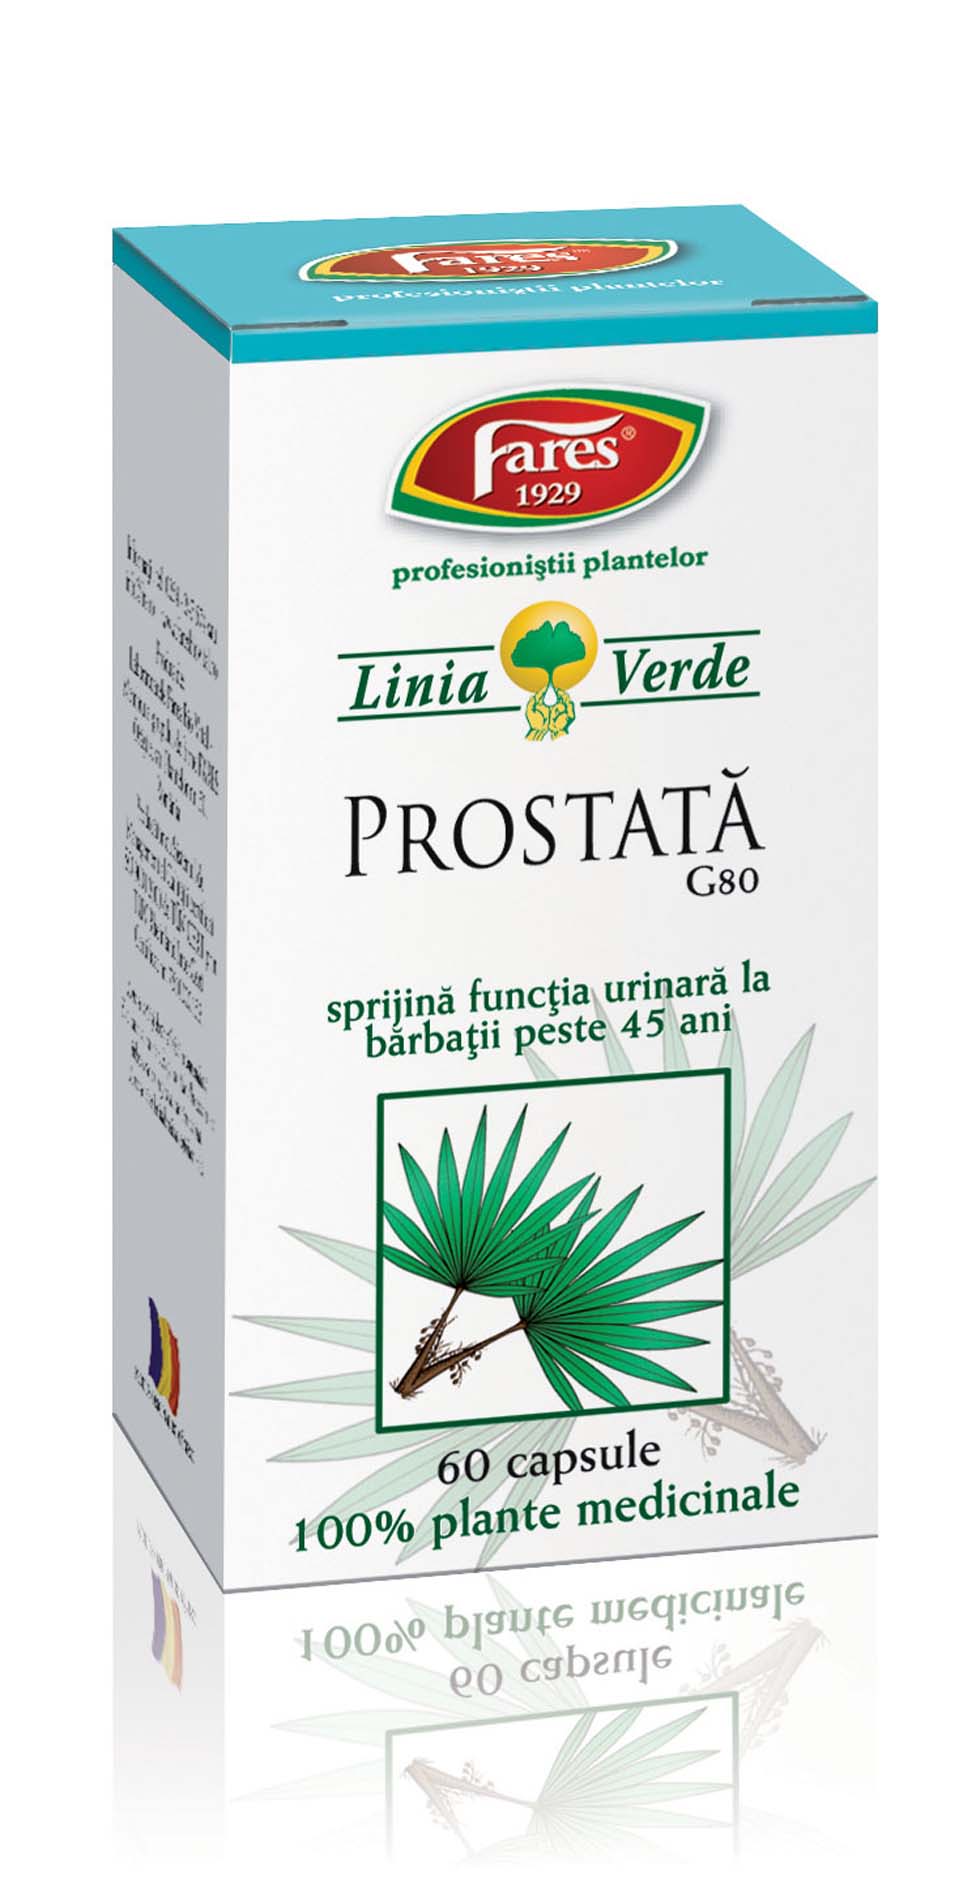 ceai de prostata prospect)